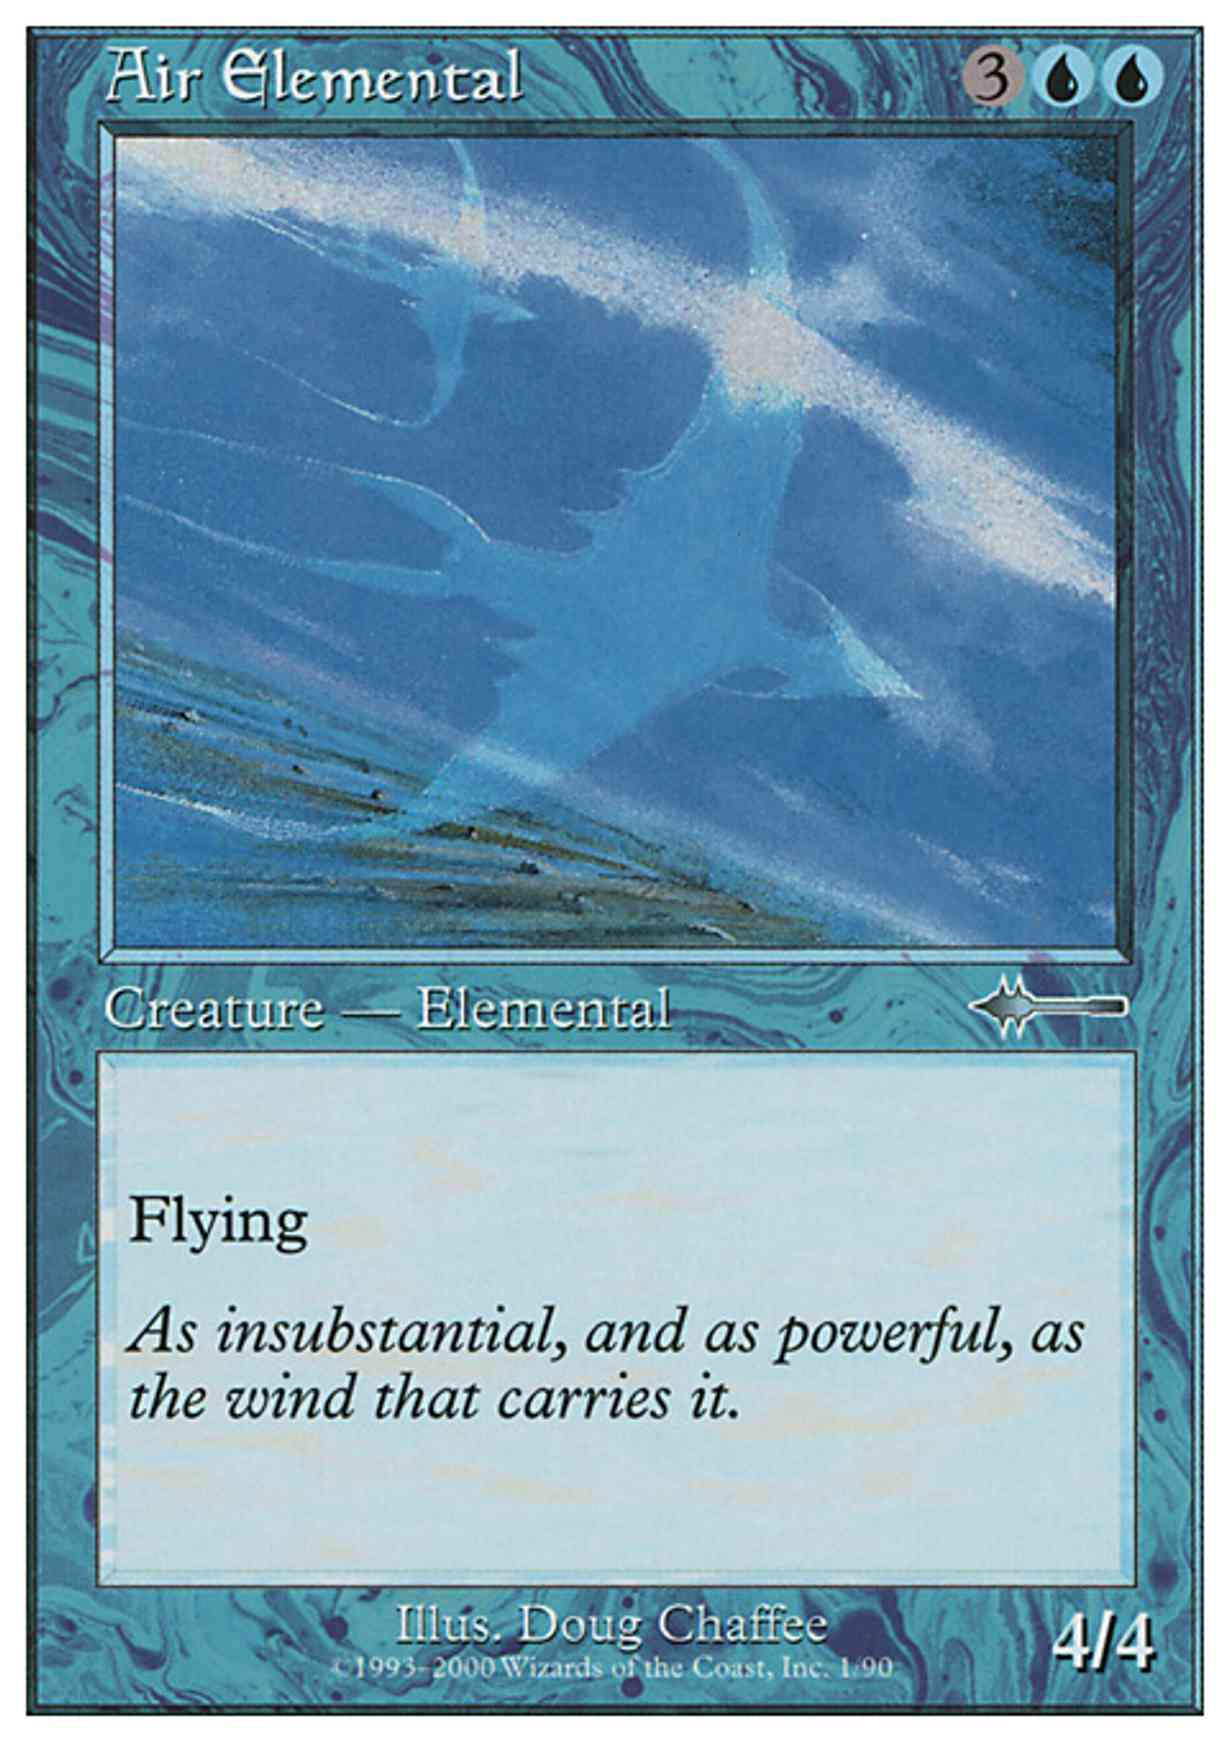 Air Elemental magic card front